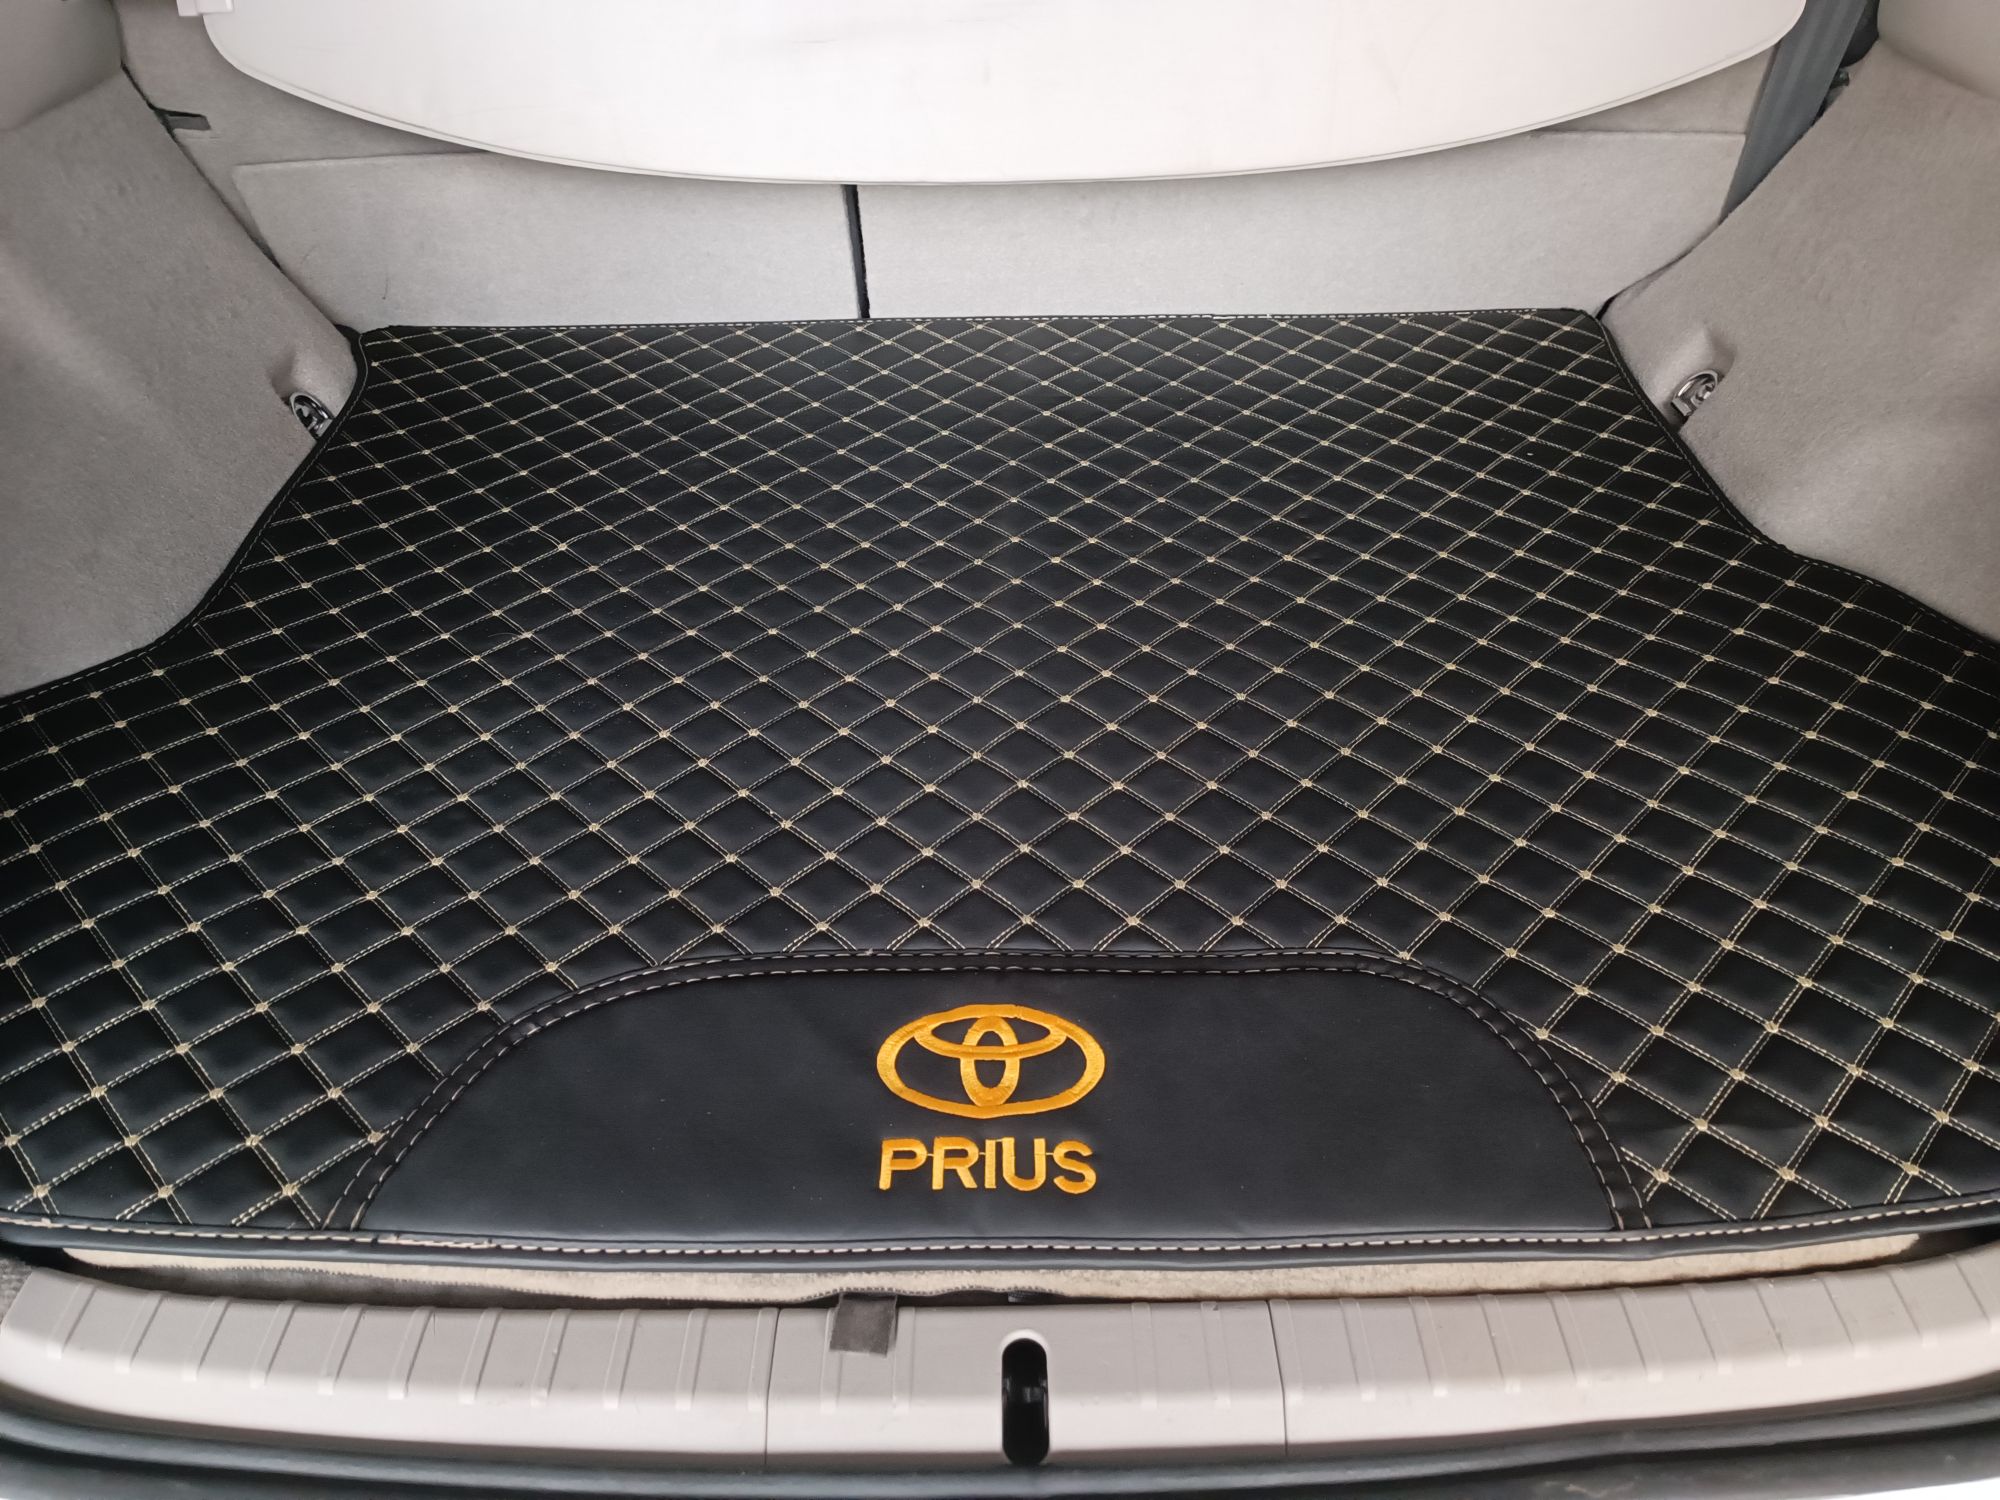 Prius 2010 option 4